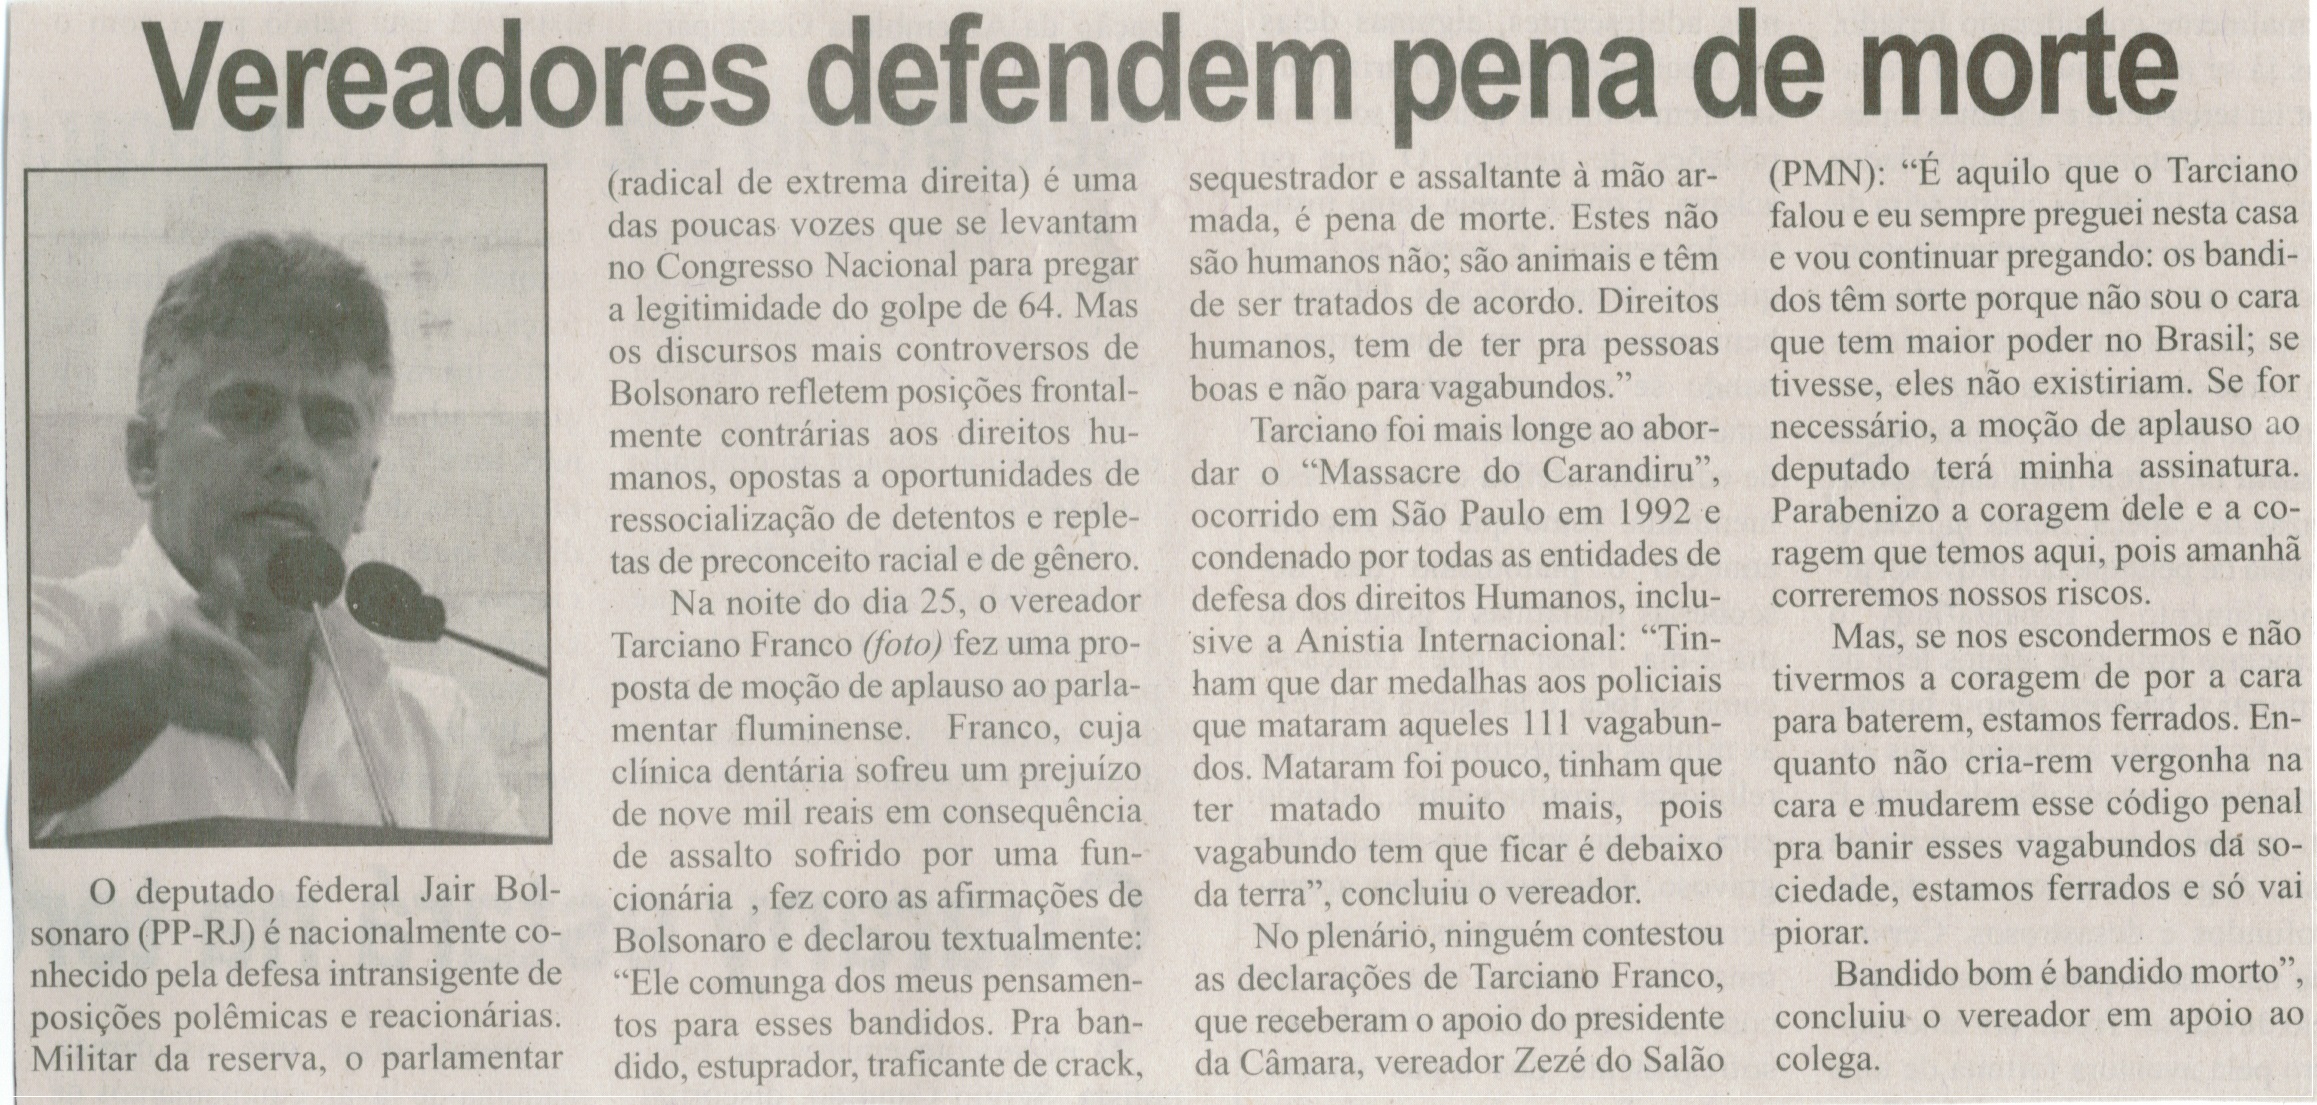 Vereadores defendem pena de morte. Correio de Minas, Conselheiro Lafaiete, 28 fev. 2014, p. 3.